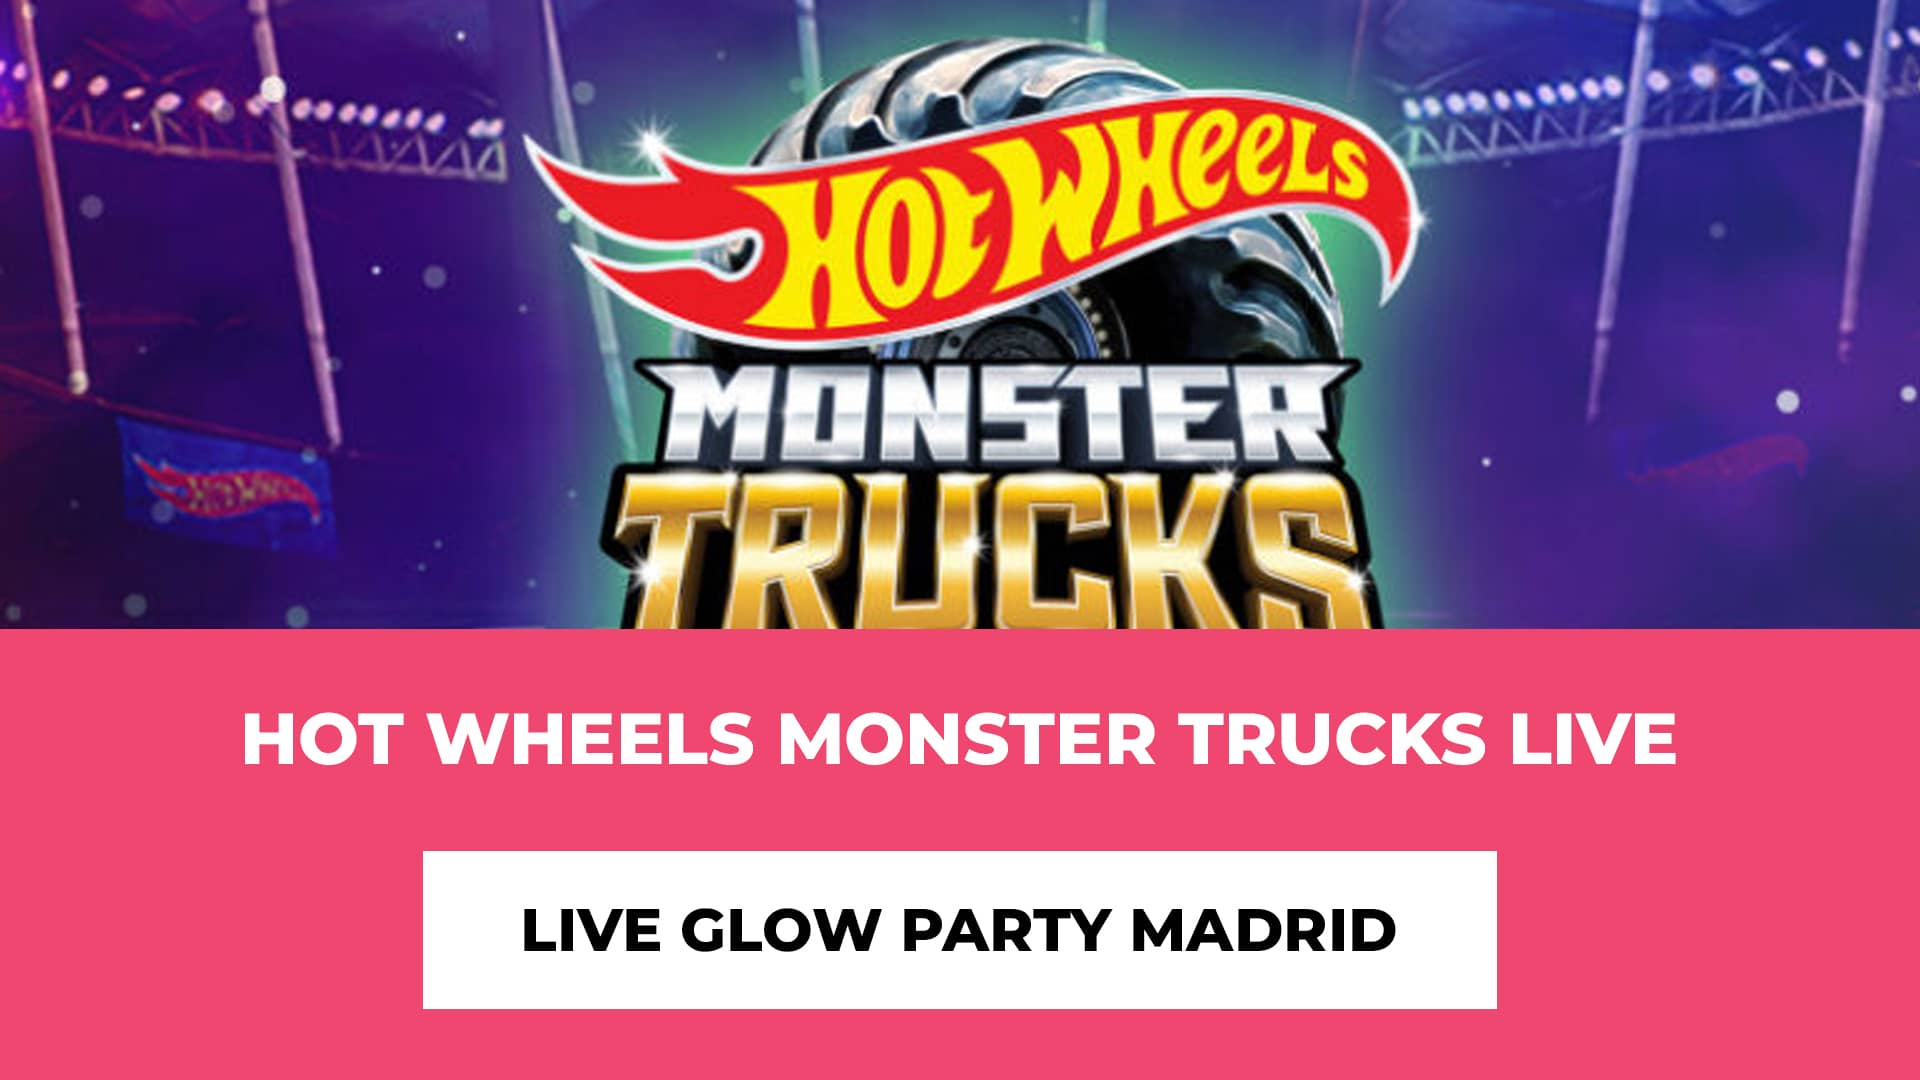 Descubre info de Hot Wheels Monster Trucks Live Glow Party Madrid - Pases horarios y dias, fiesta de baile, perfecto para toda la familia